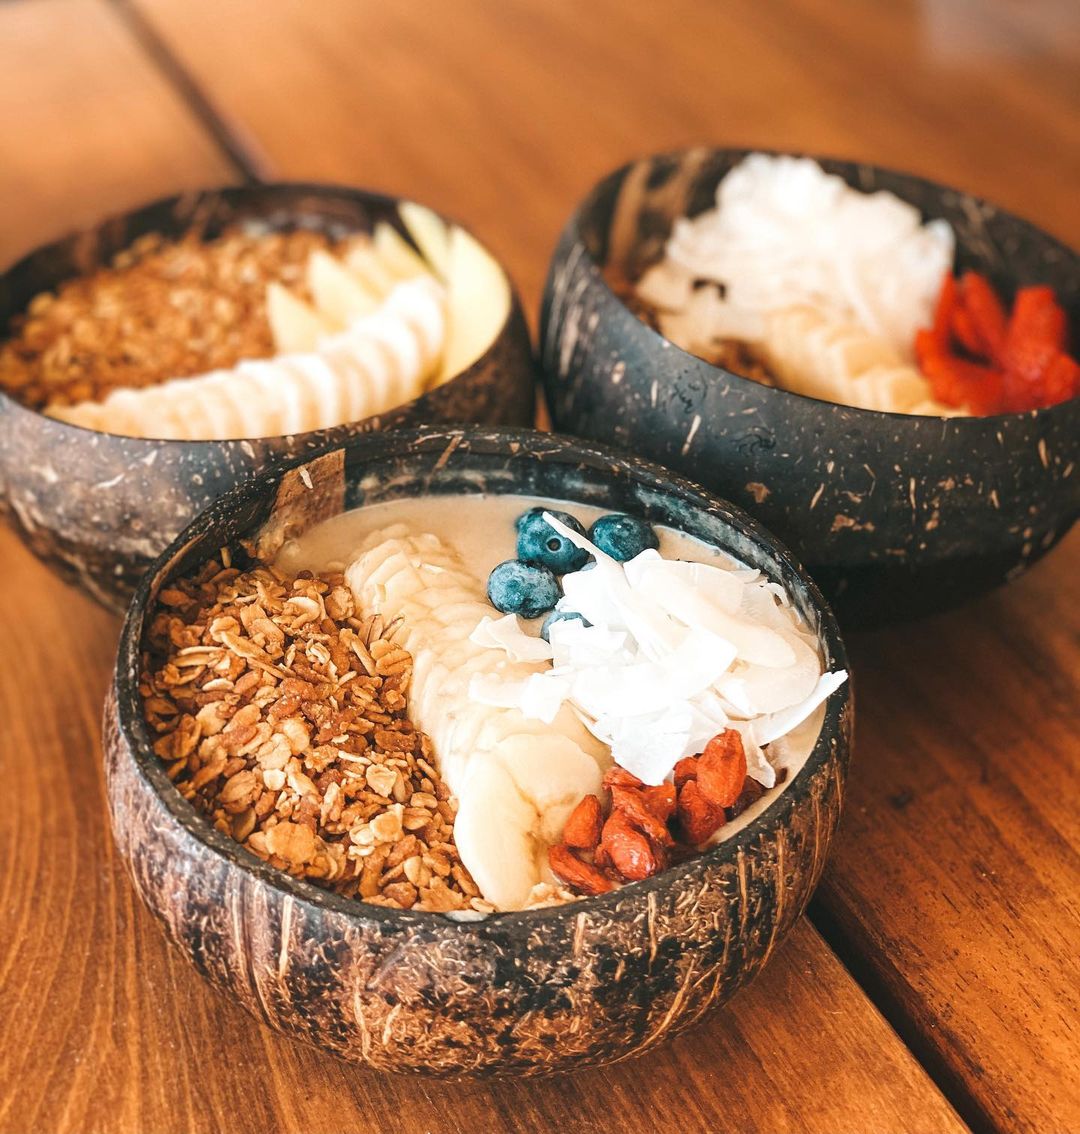 Coconut Bowls - Nature Coconut Bowl